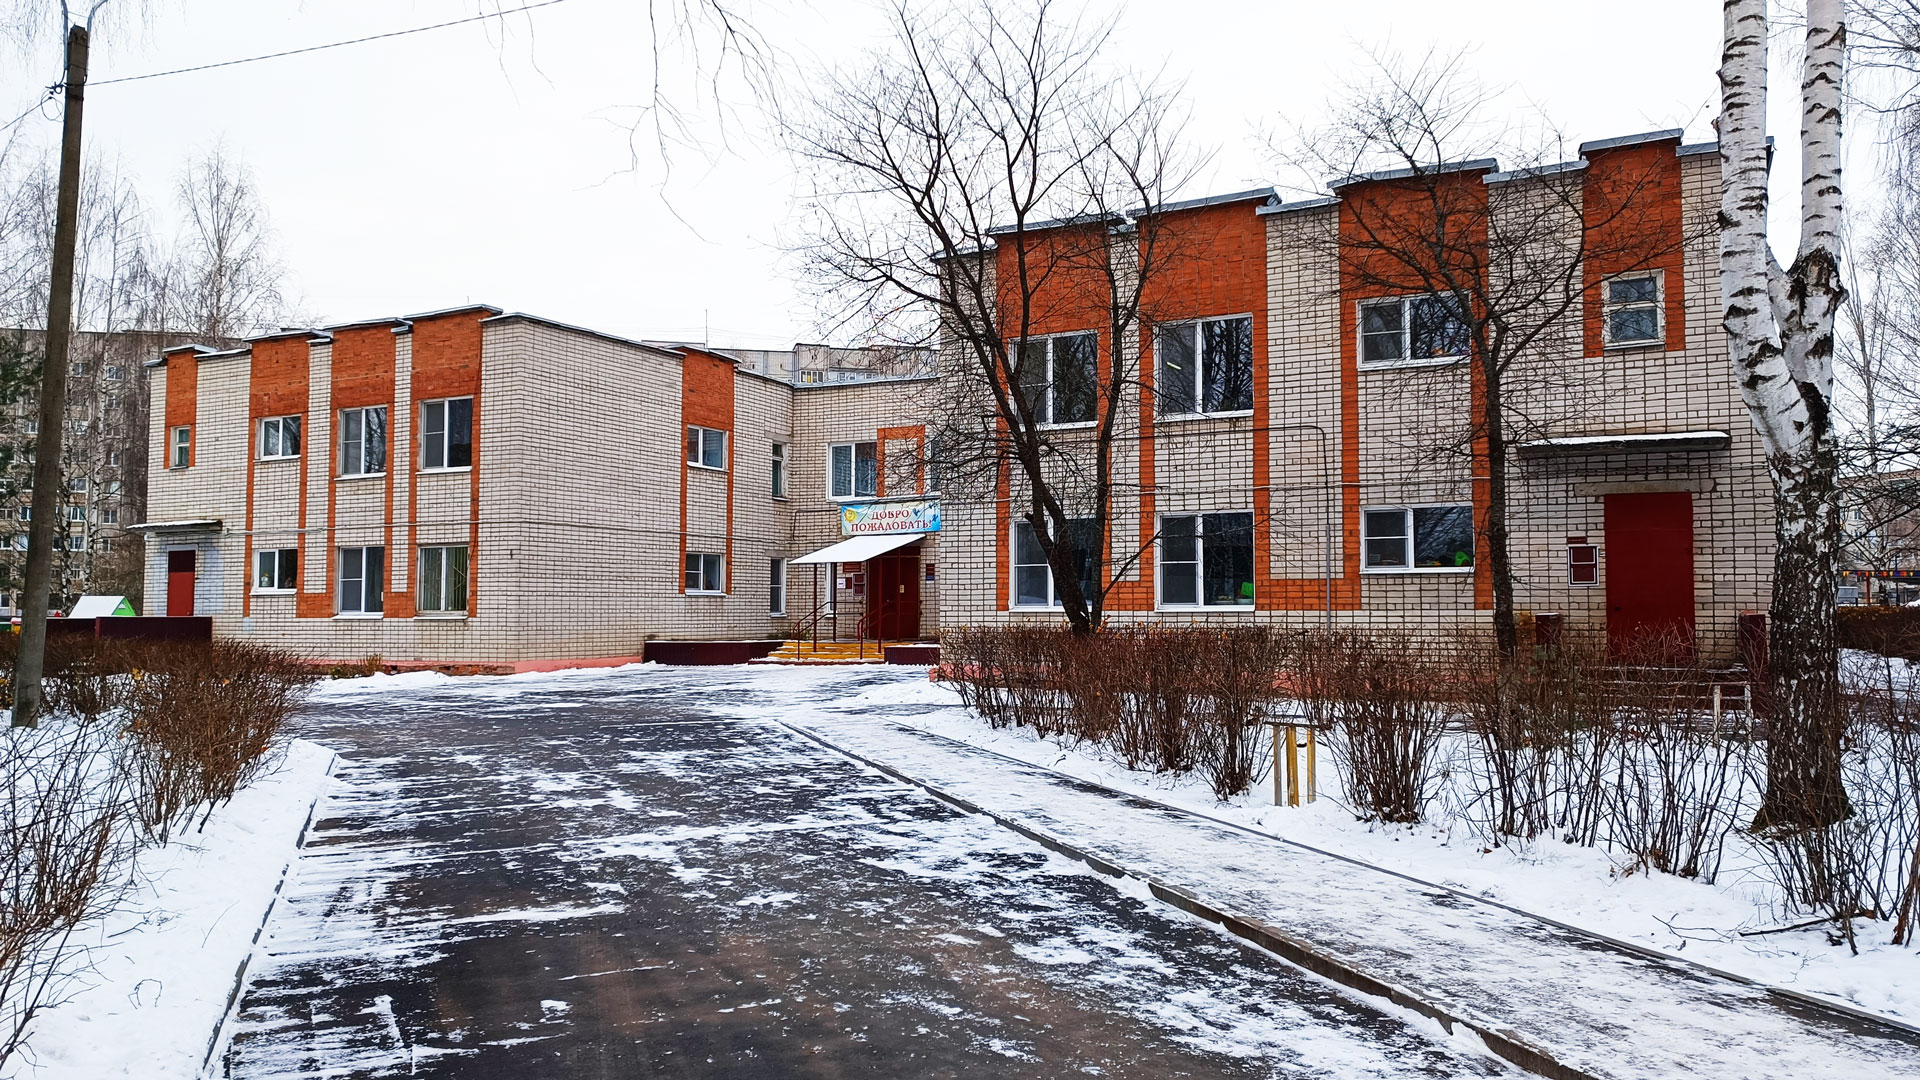 Детский сад 142 Ярославль: общий вид здания.